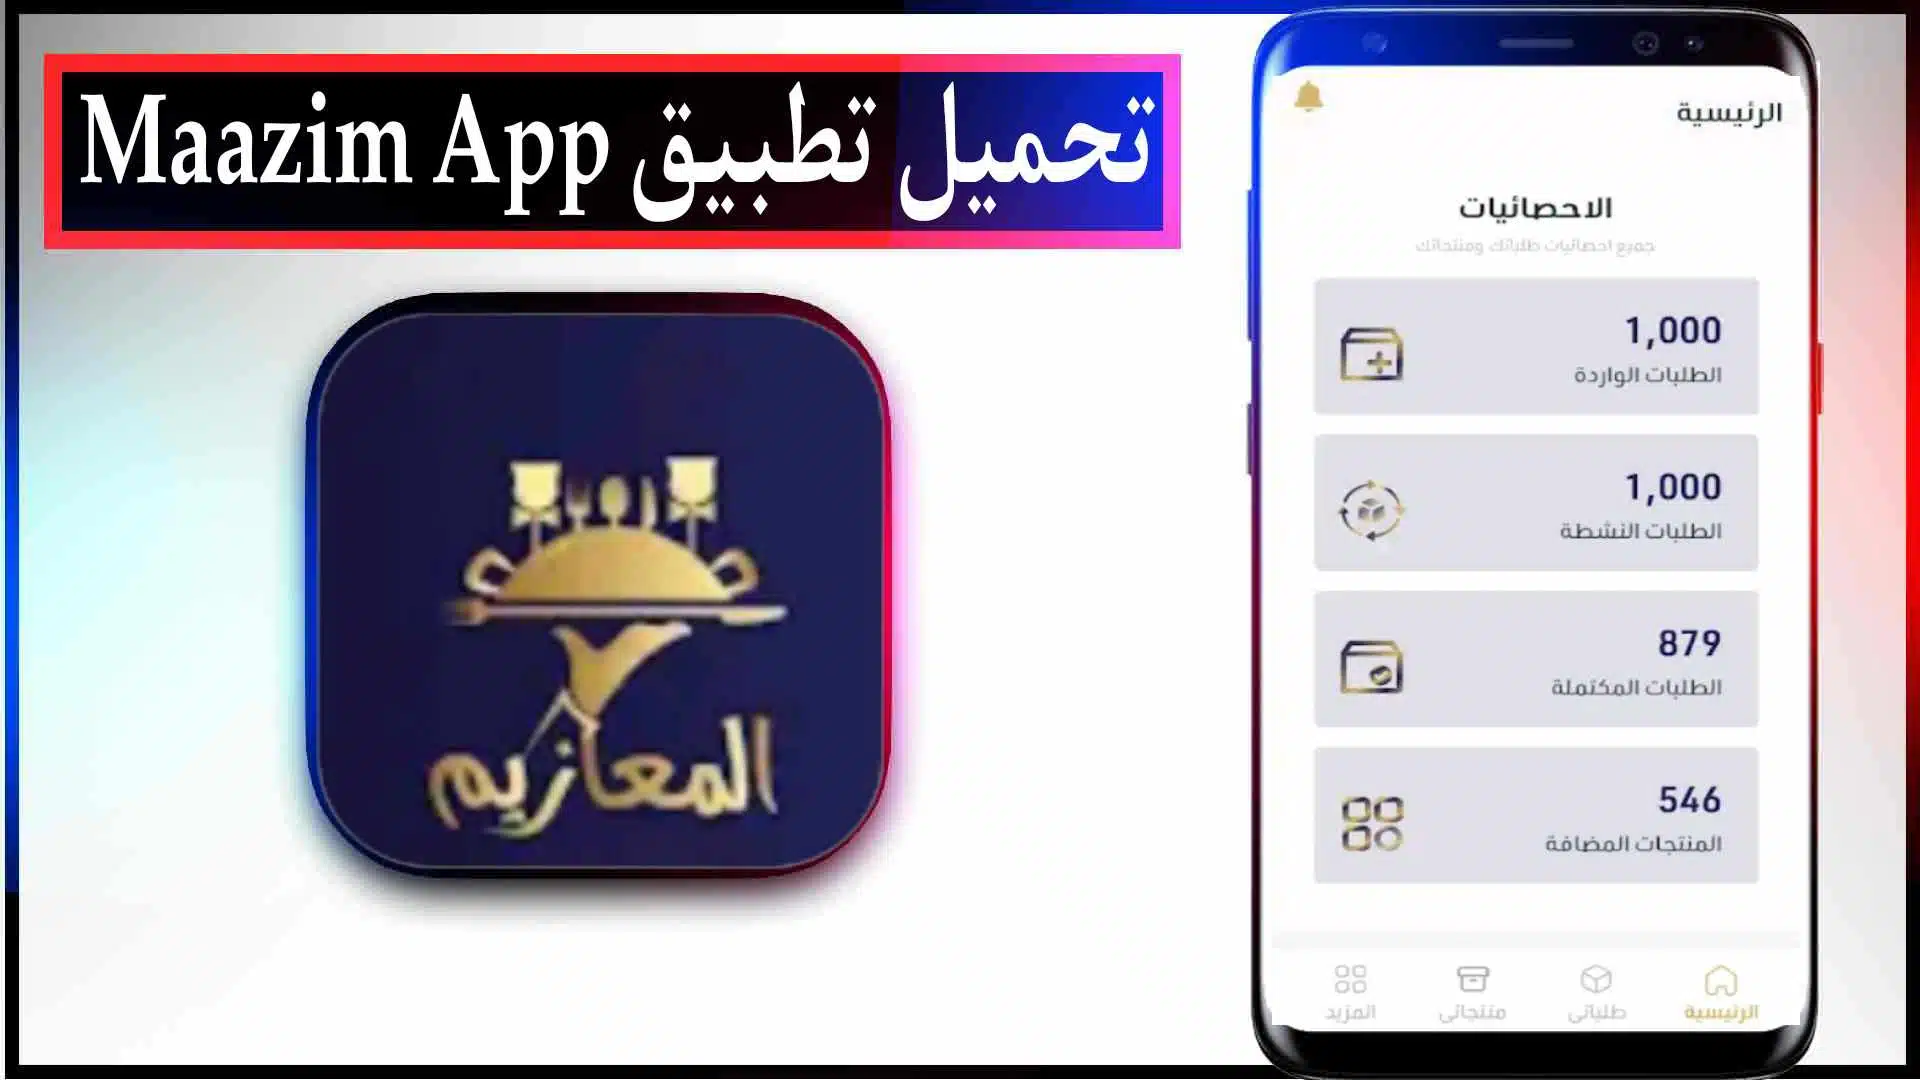 تحميل تطبيق معازيم اخر اصدار للايفون وللاندرويد Maazim App مجانا 2023